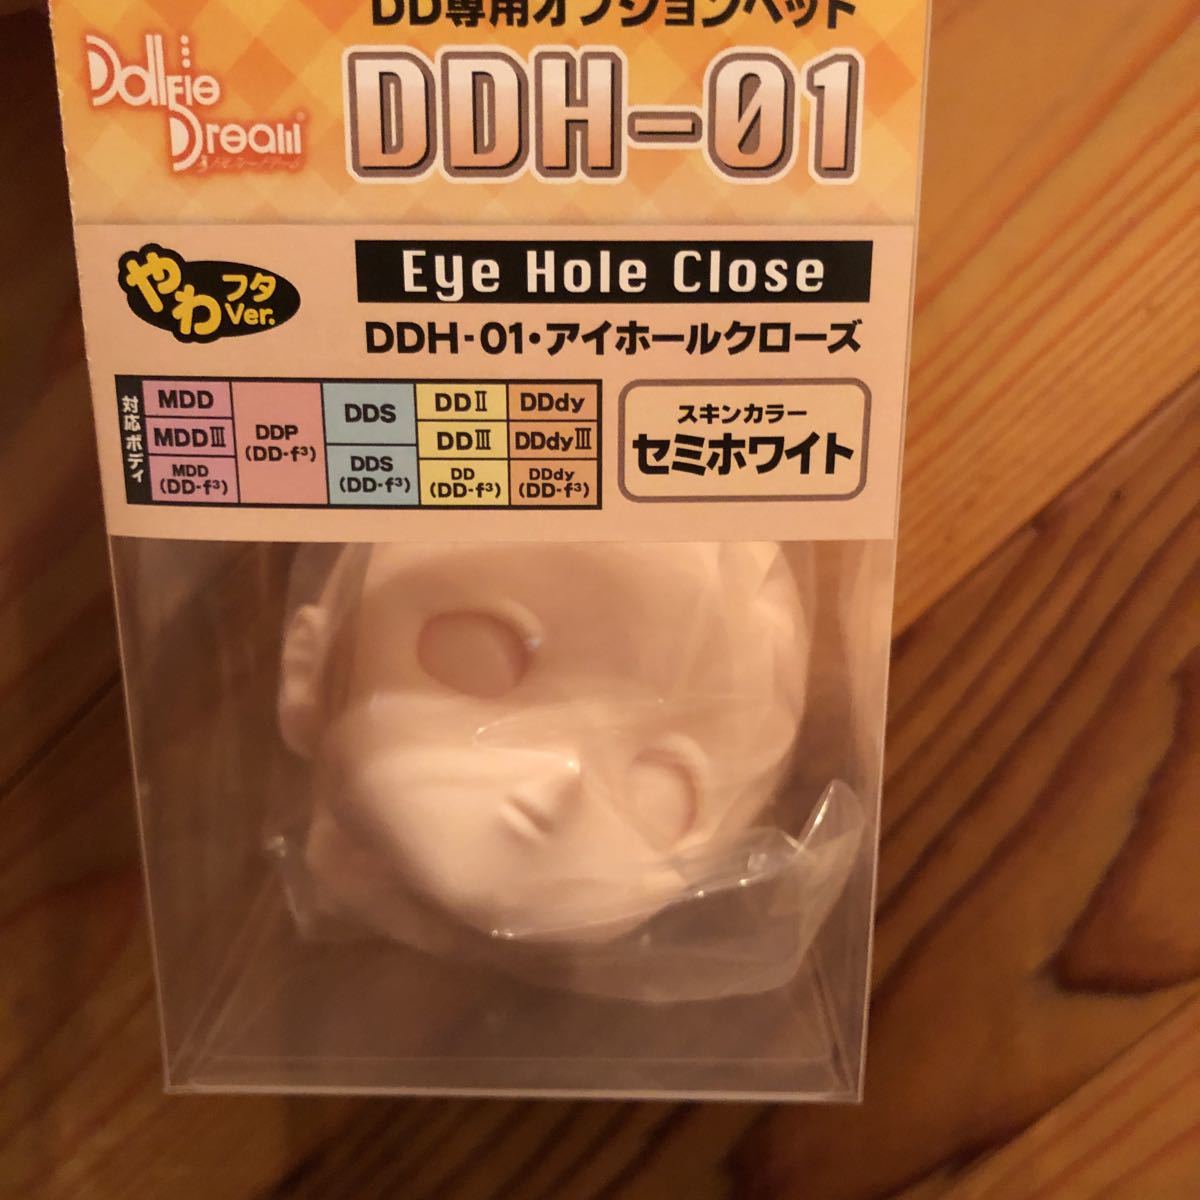 新品未開封 DDH-01 ヘッド Eye hole close セミホワイト / アイホールクローズ ドルフィードリーム ドール ヘッド DD MDD volks ボークス_画像1